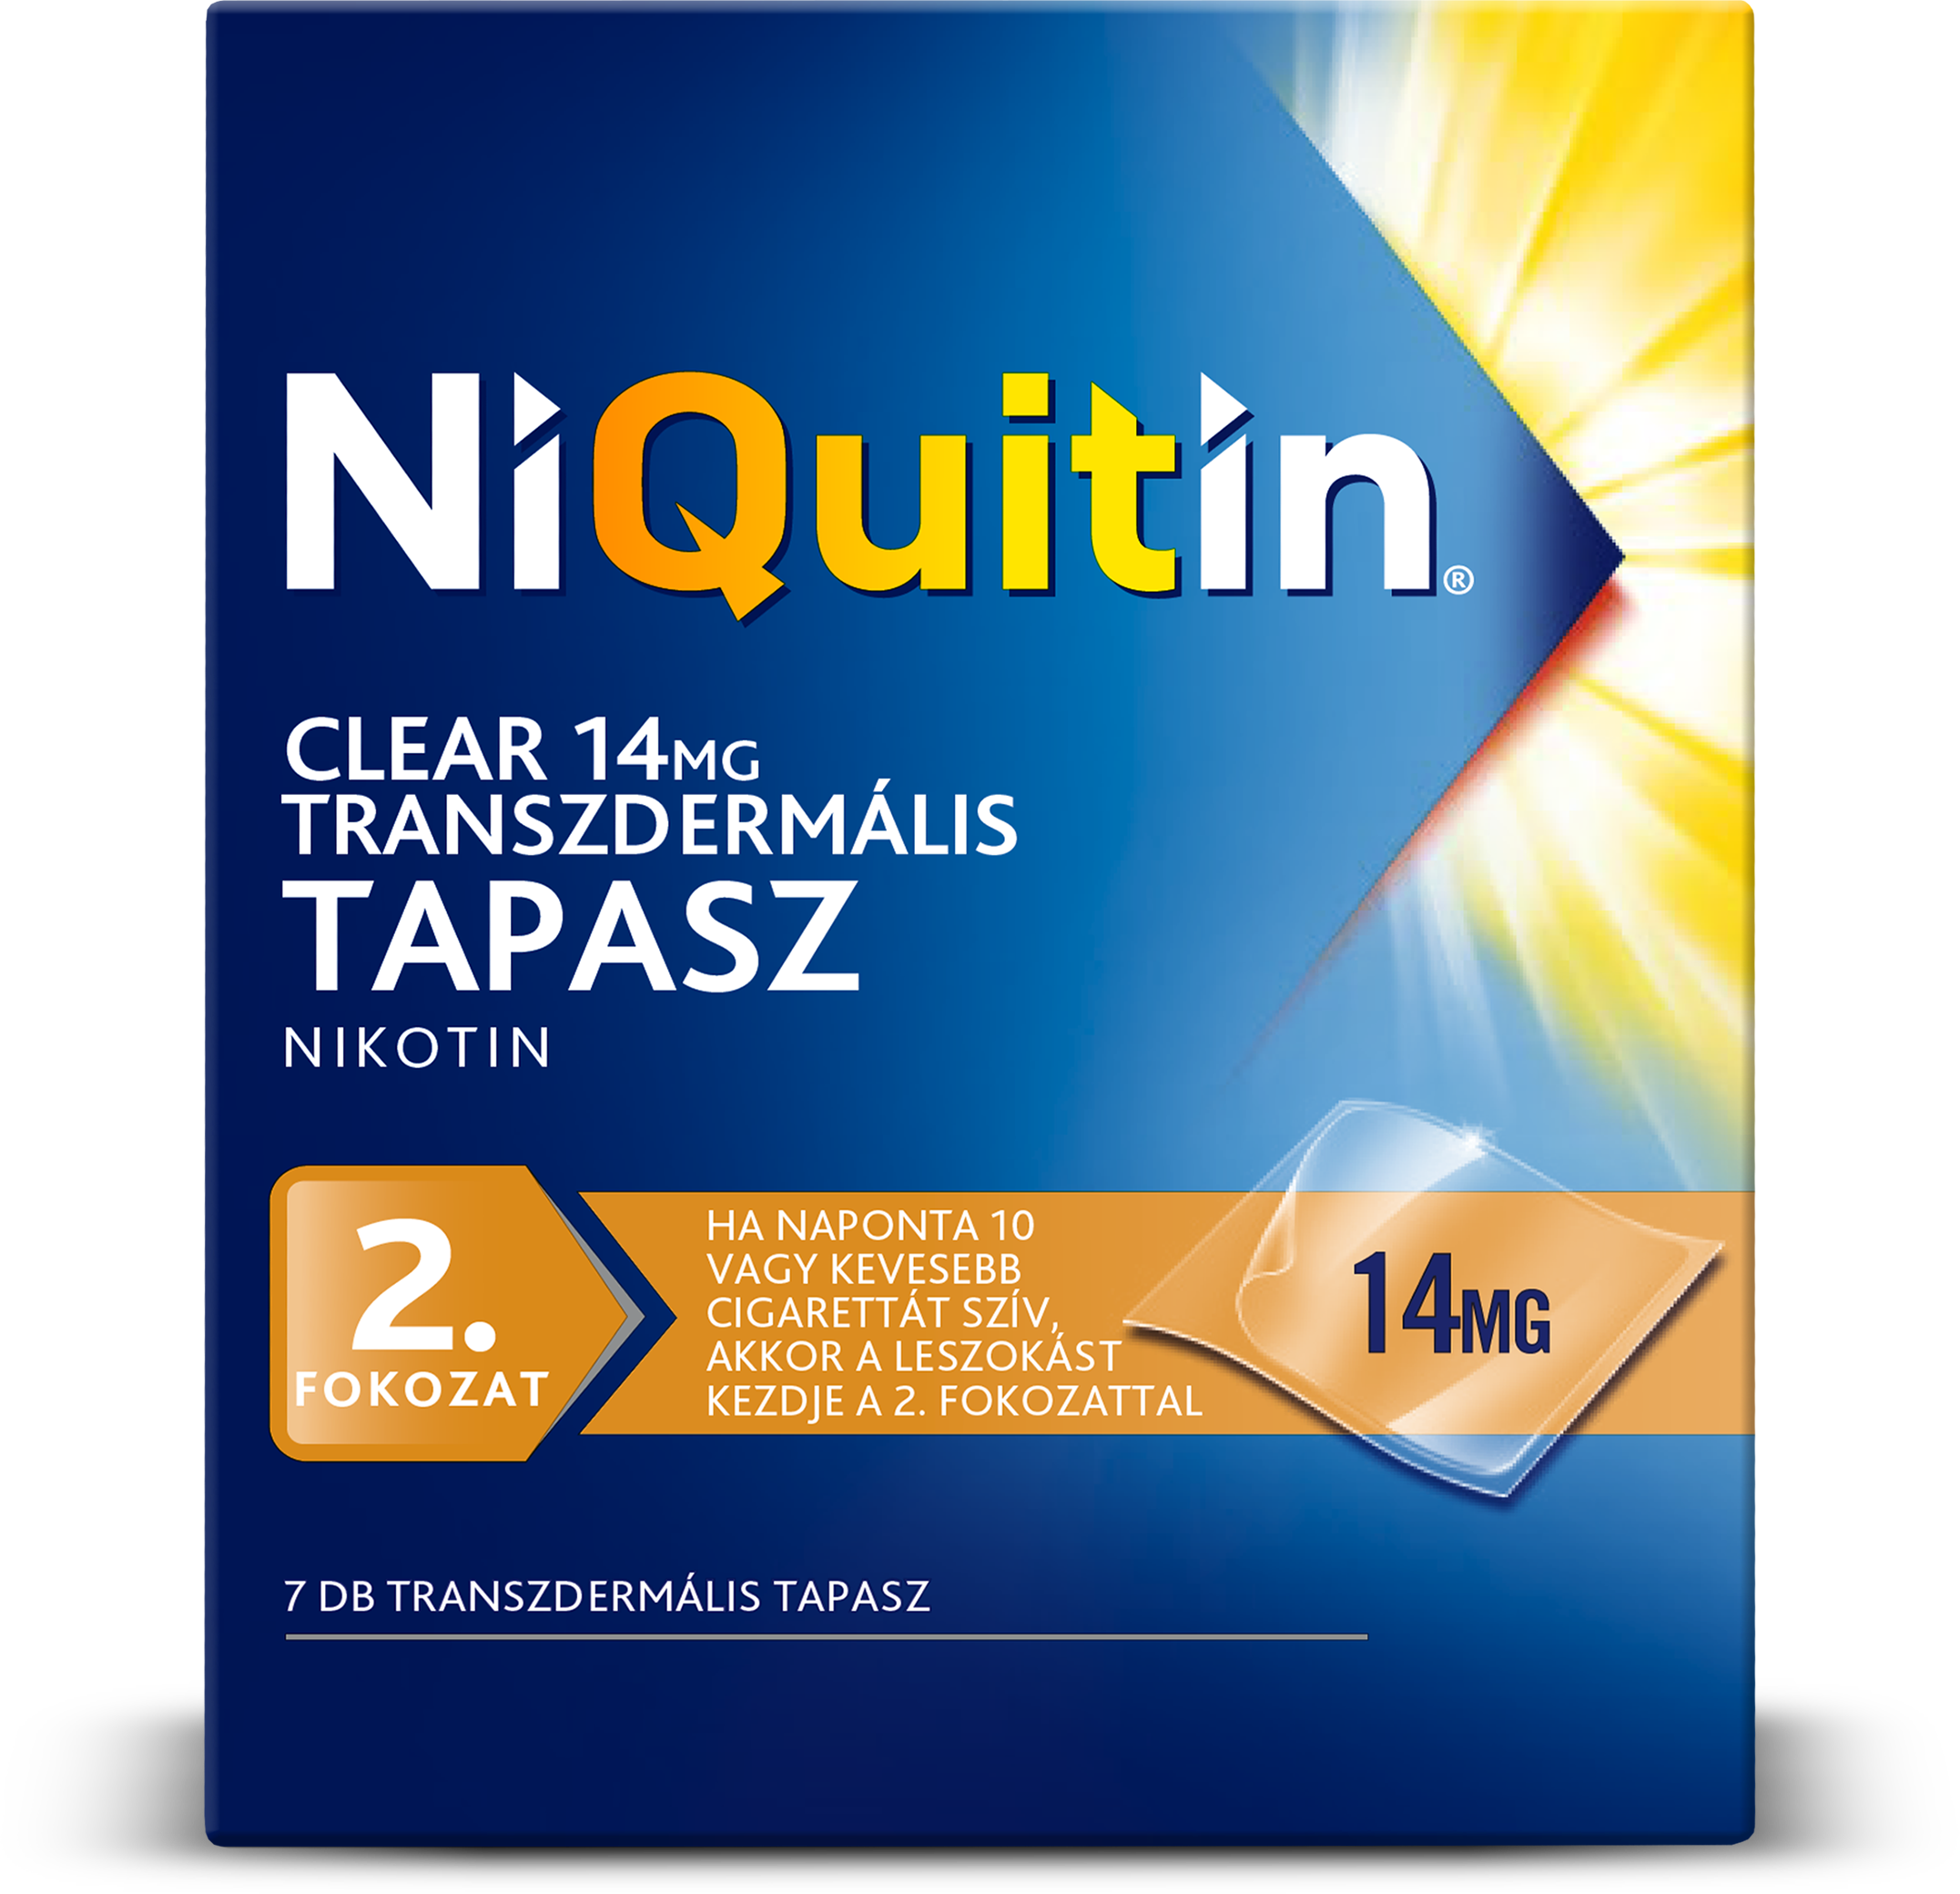 NiQuitin Clear 14 mg transzdermális tapasz